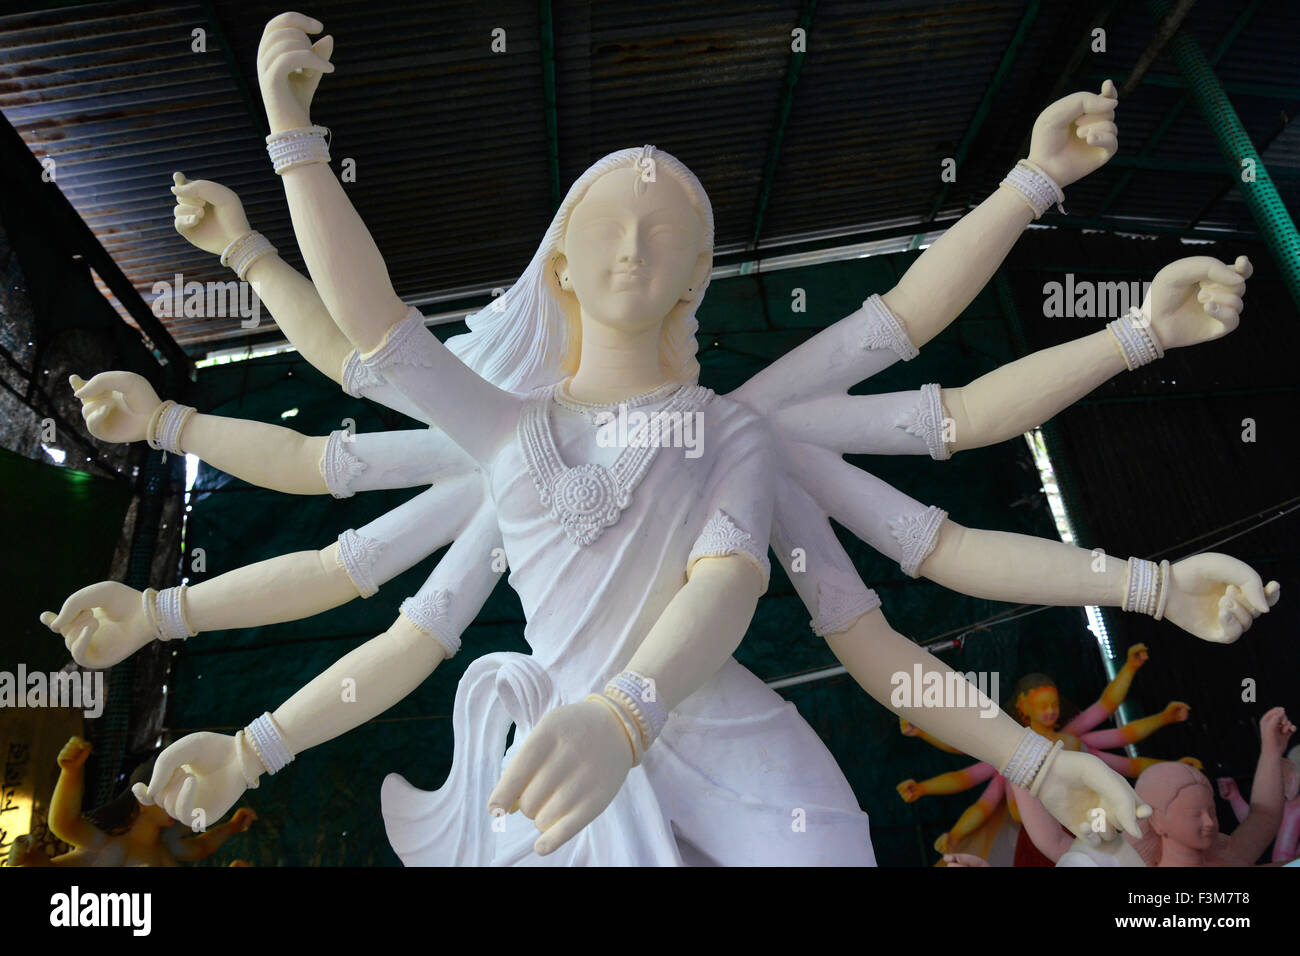 Una statua di Durga Puja è visibile in una stanza di sculture in anticipo del Festival di Durga a Dhaka, nel Bangladesh. Il 9 ottobre 2015 la gente del Bangladesh sono stati visti facendo i preparativi per il Festival di Durga Puja a Dhaka. Il festival indù che celebra la dea Durga Puja, annualmente viene celebrato in diverse parti del Bangladesh come pure stati indiani. Foto Stock